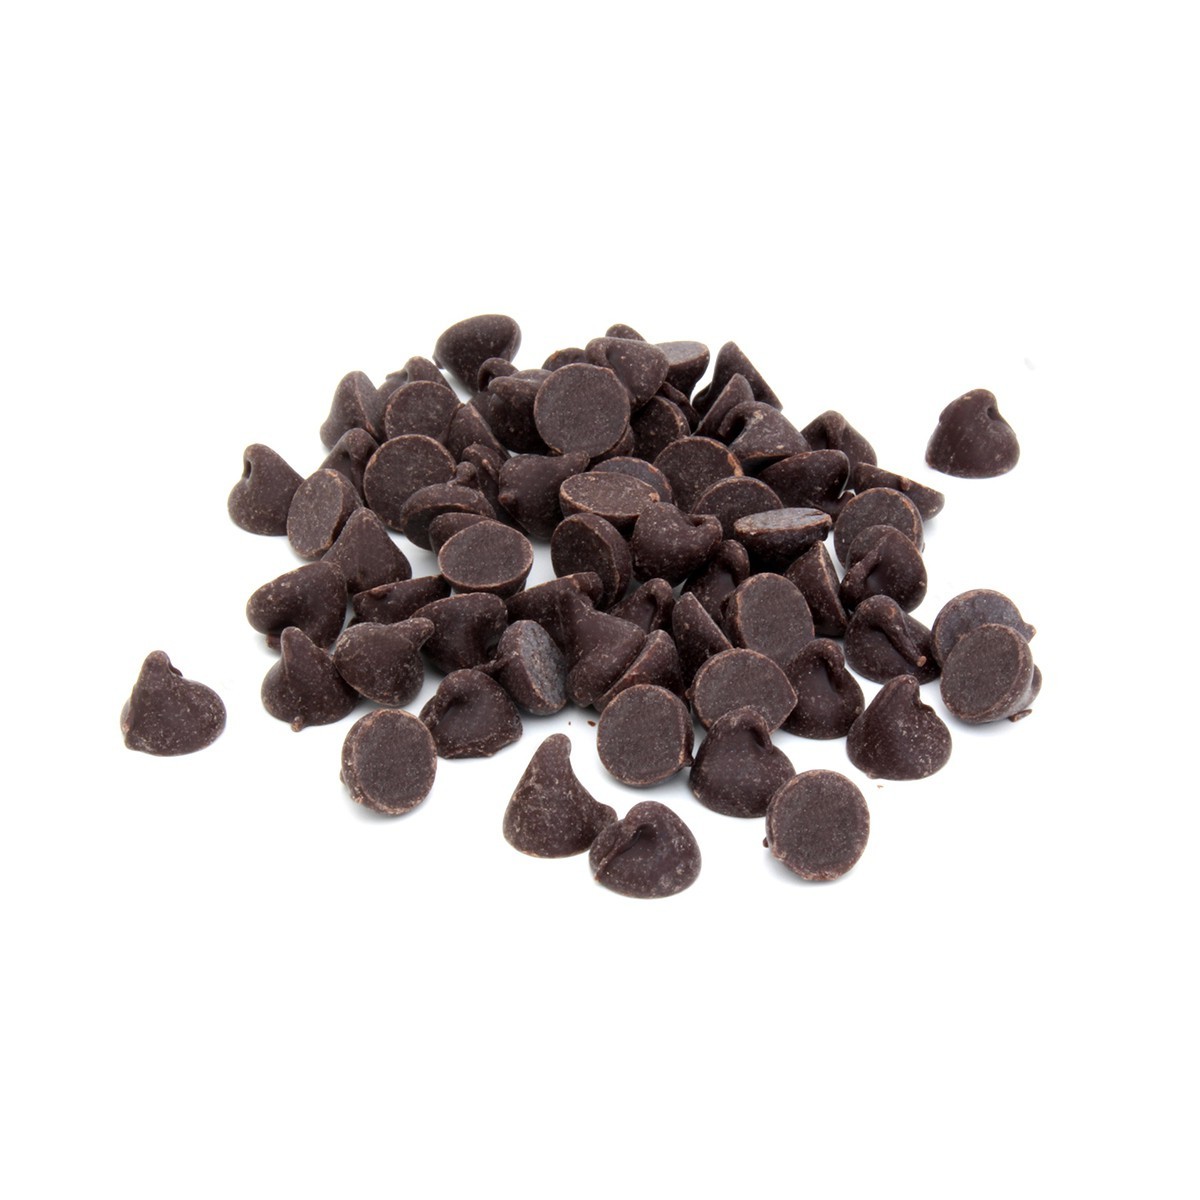 Pépites de chocolat noir 72% bio & équitable VRAC RHD - 5 kg